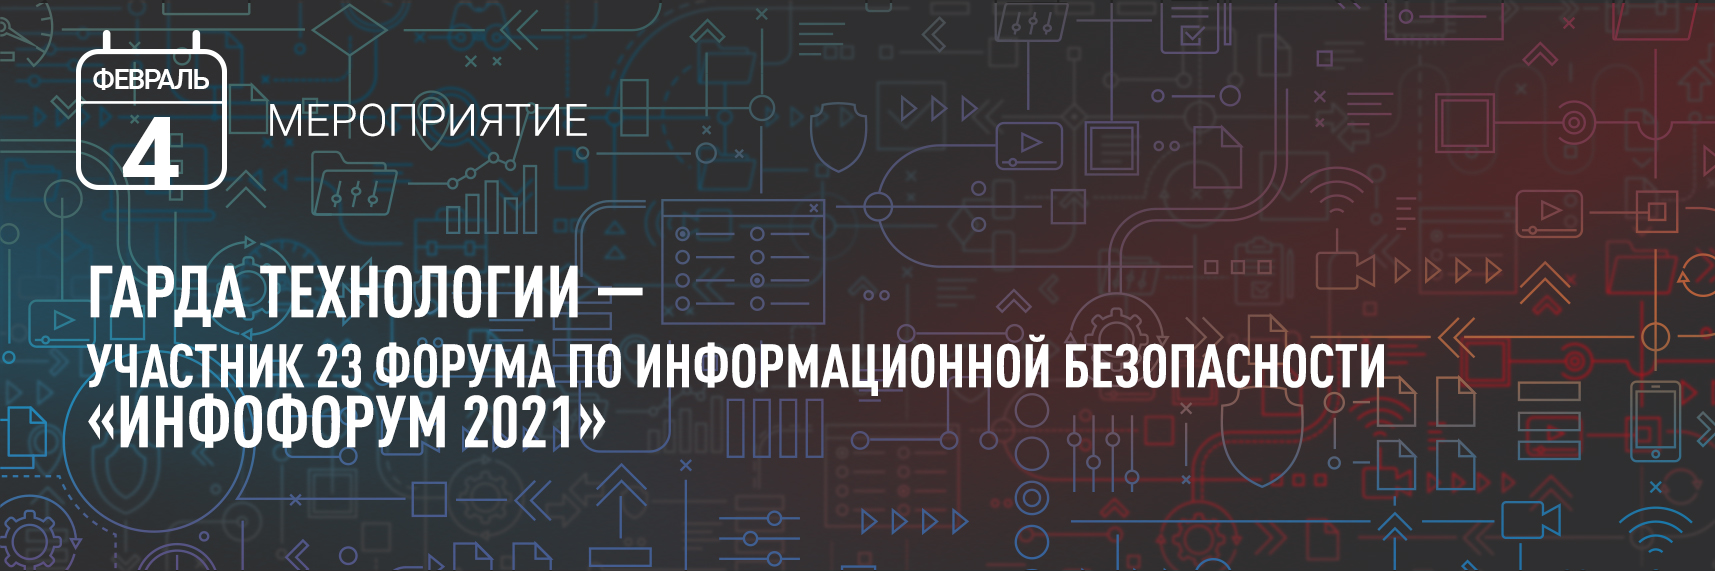 Гарда Технологии — участник 23 форума по информационной безопасности «Инфофорум 2021»